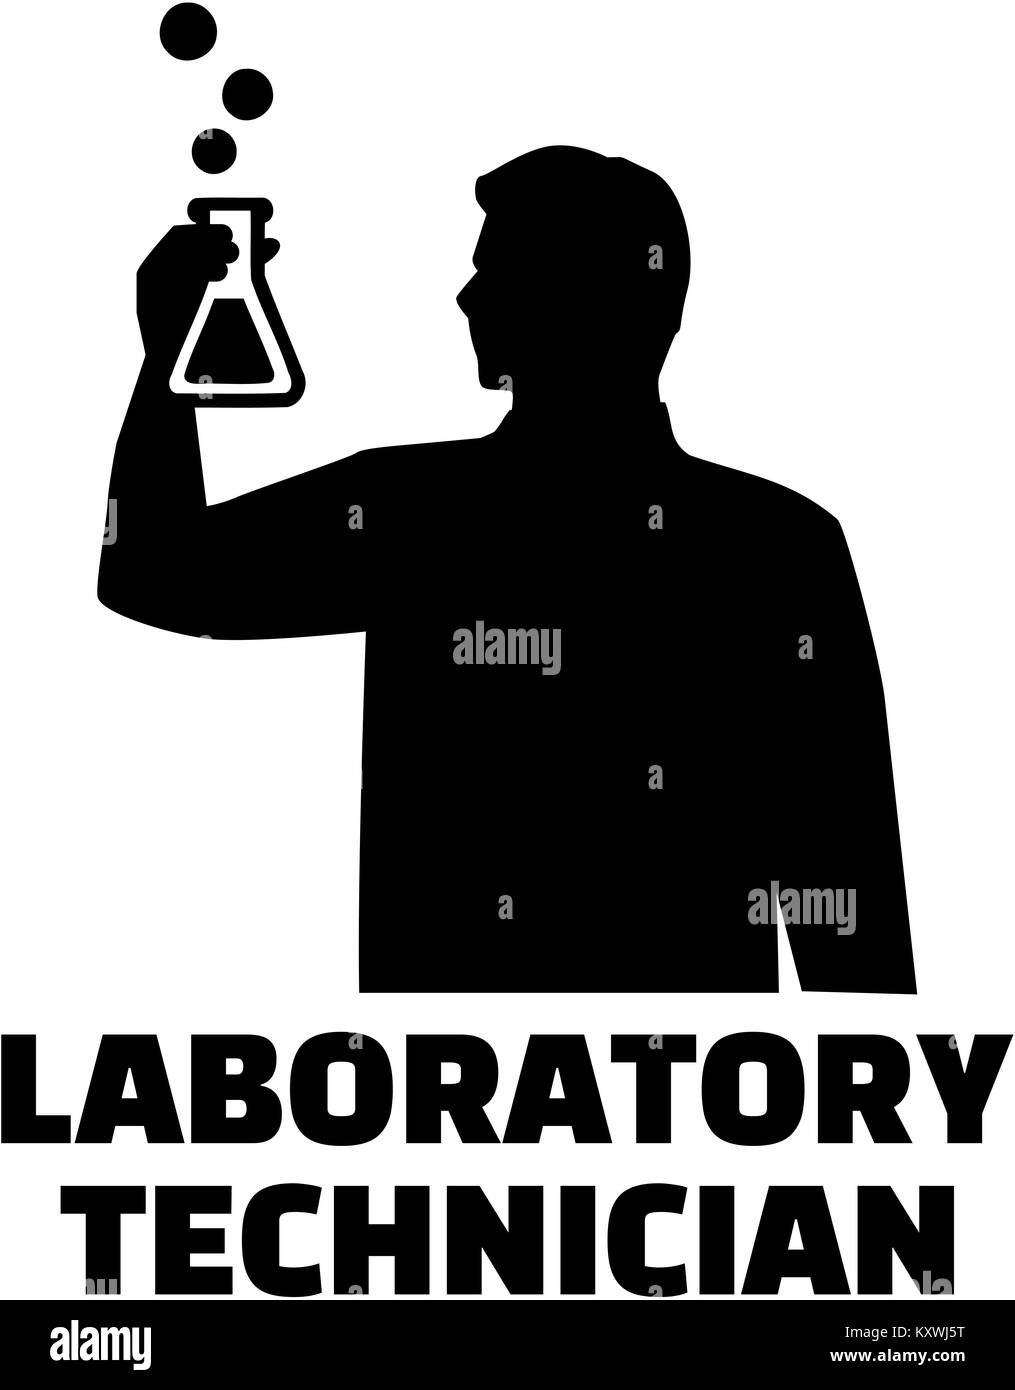 Laboratory technician silhouette Stock Photo